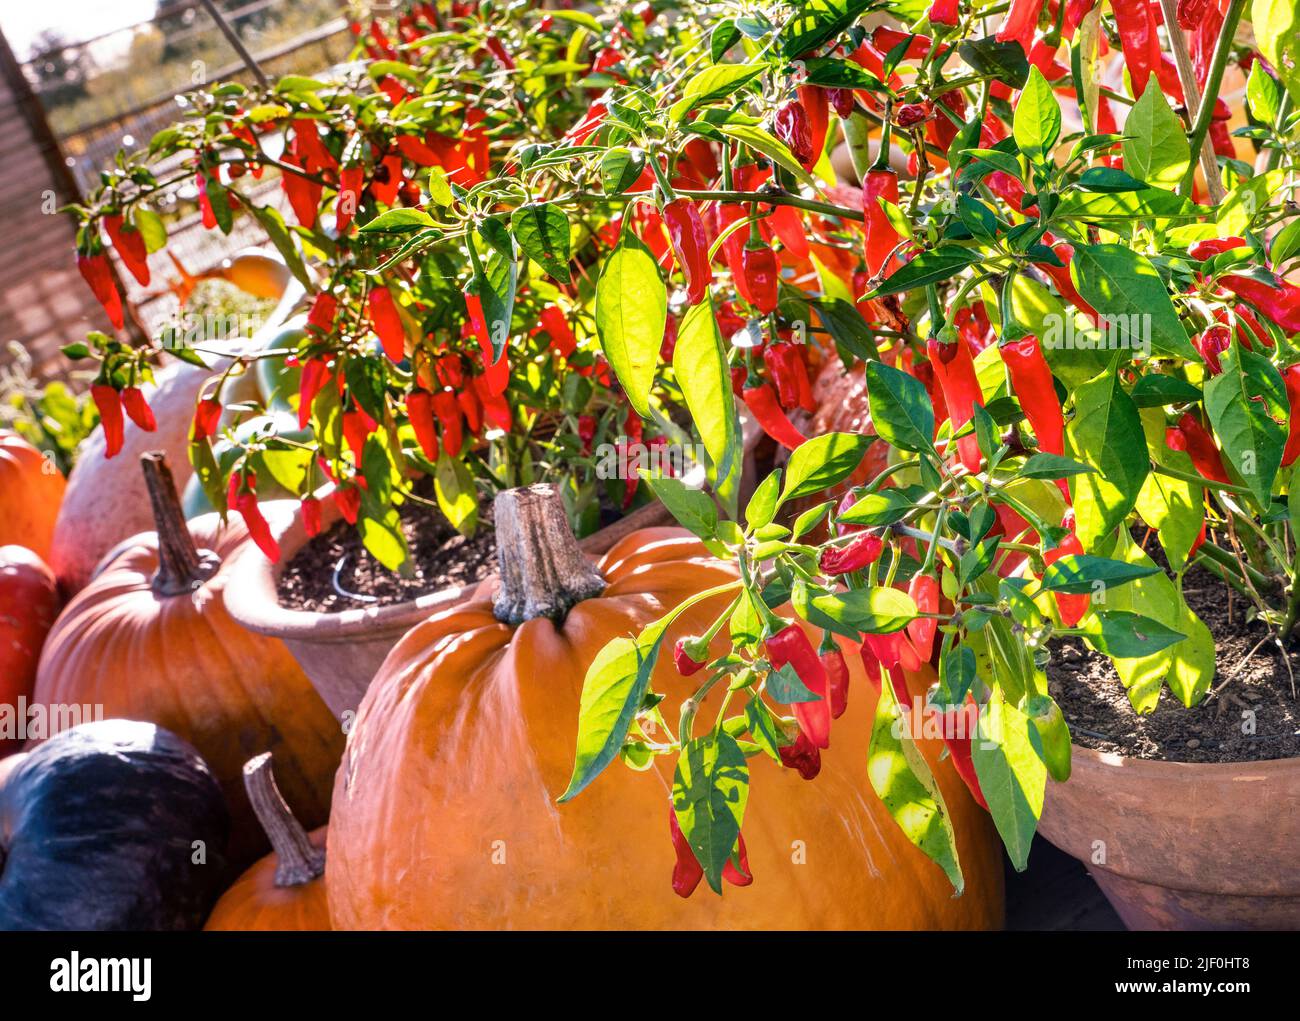 PEPERONCINI rossi Apache verdure peperoncino (capsicum annum) in vaso in terracotta con raccolta di zucca e zucche dietro formazione attraente produzione mostra fuori azienda agricola biologica UK Foto Stock